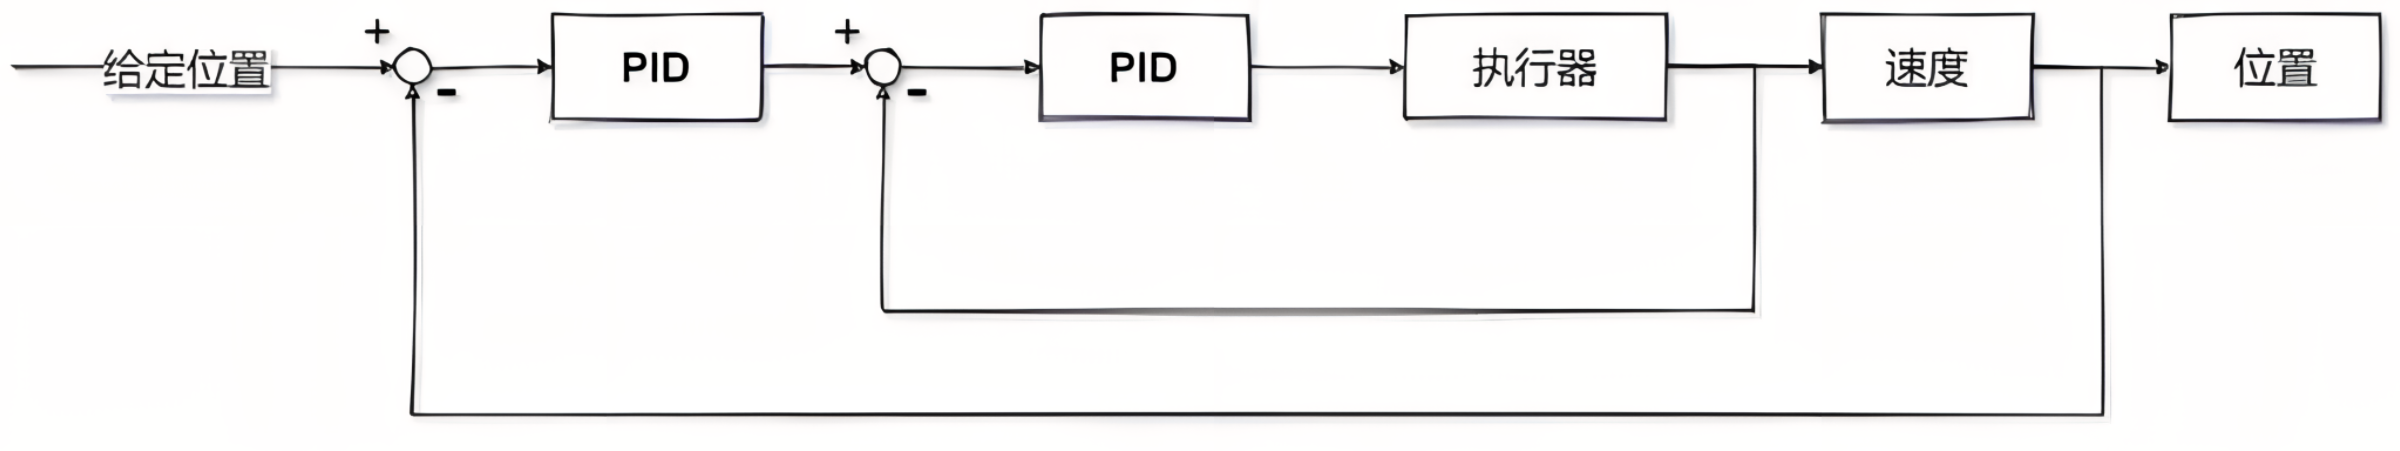 PID框图1